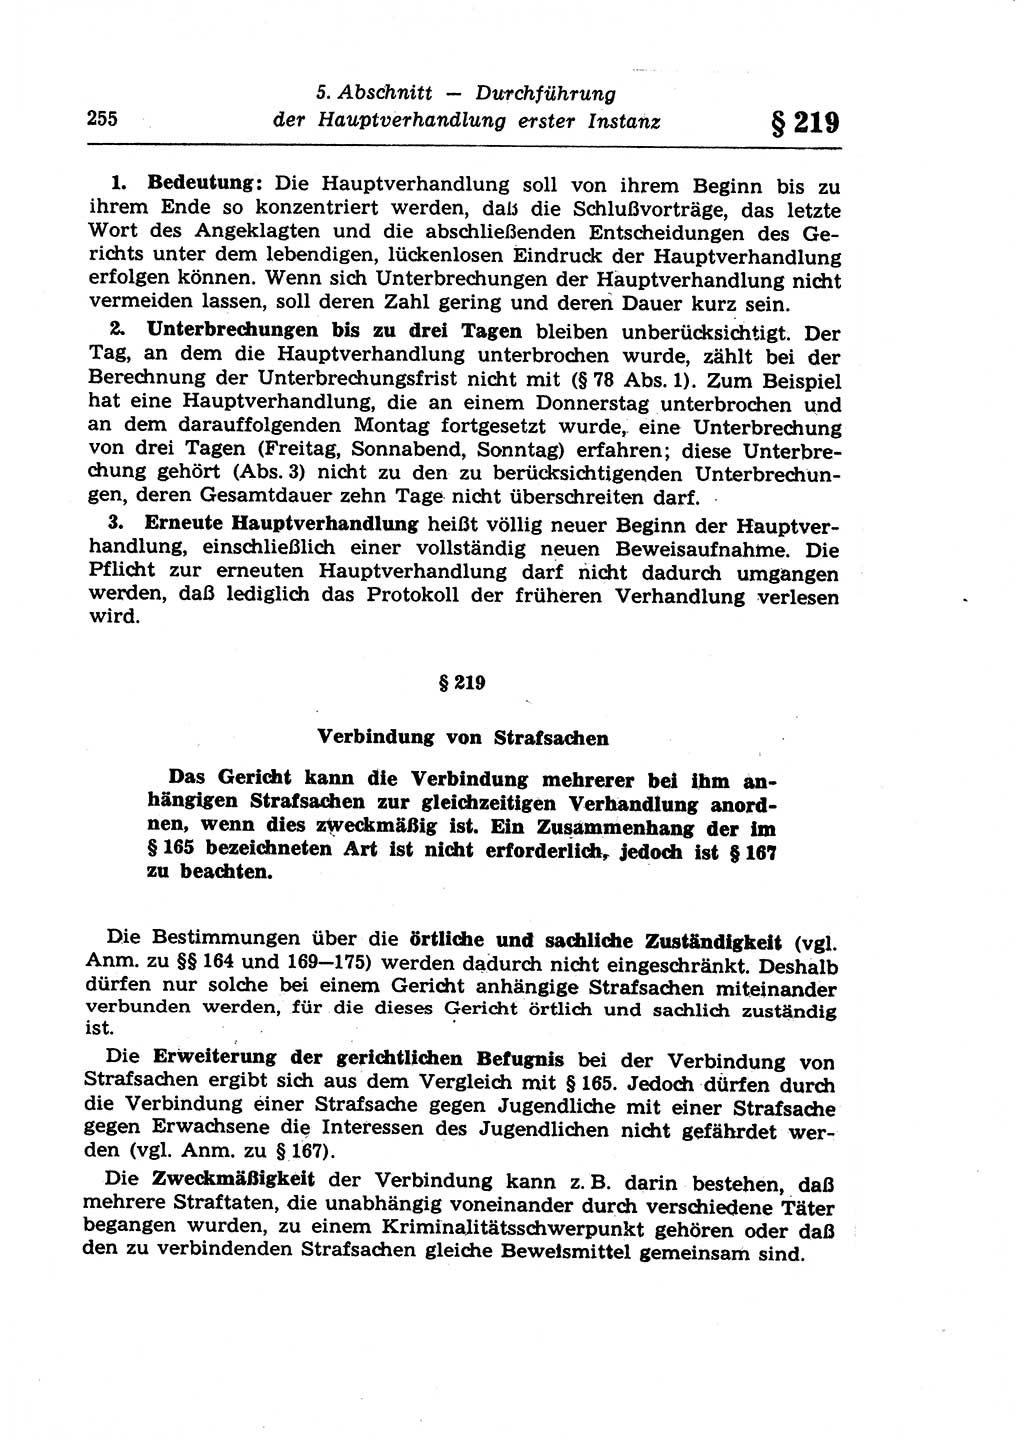 Strafprozeßrecht der DDR (Deutsche Demokratische Republik), Lehrkommentar zur Strafprozeßordnung (StPO) 1968, Seite 255 (Strafprozeßr. DDR Lehrkomm. StPO 19688, S. 255)